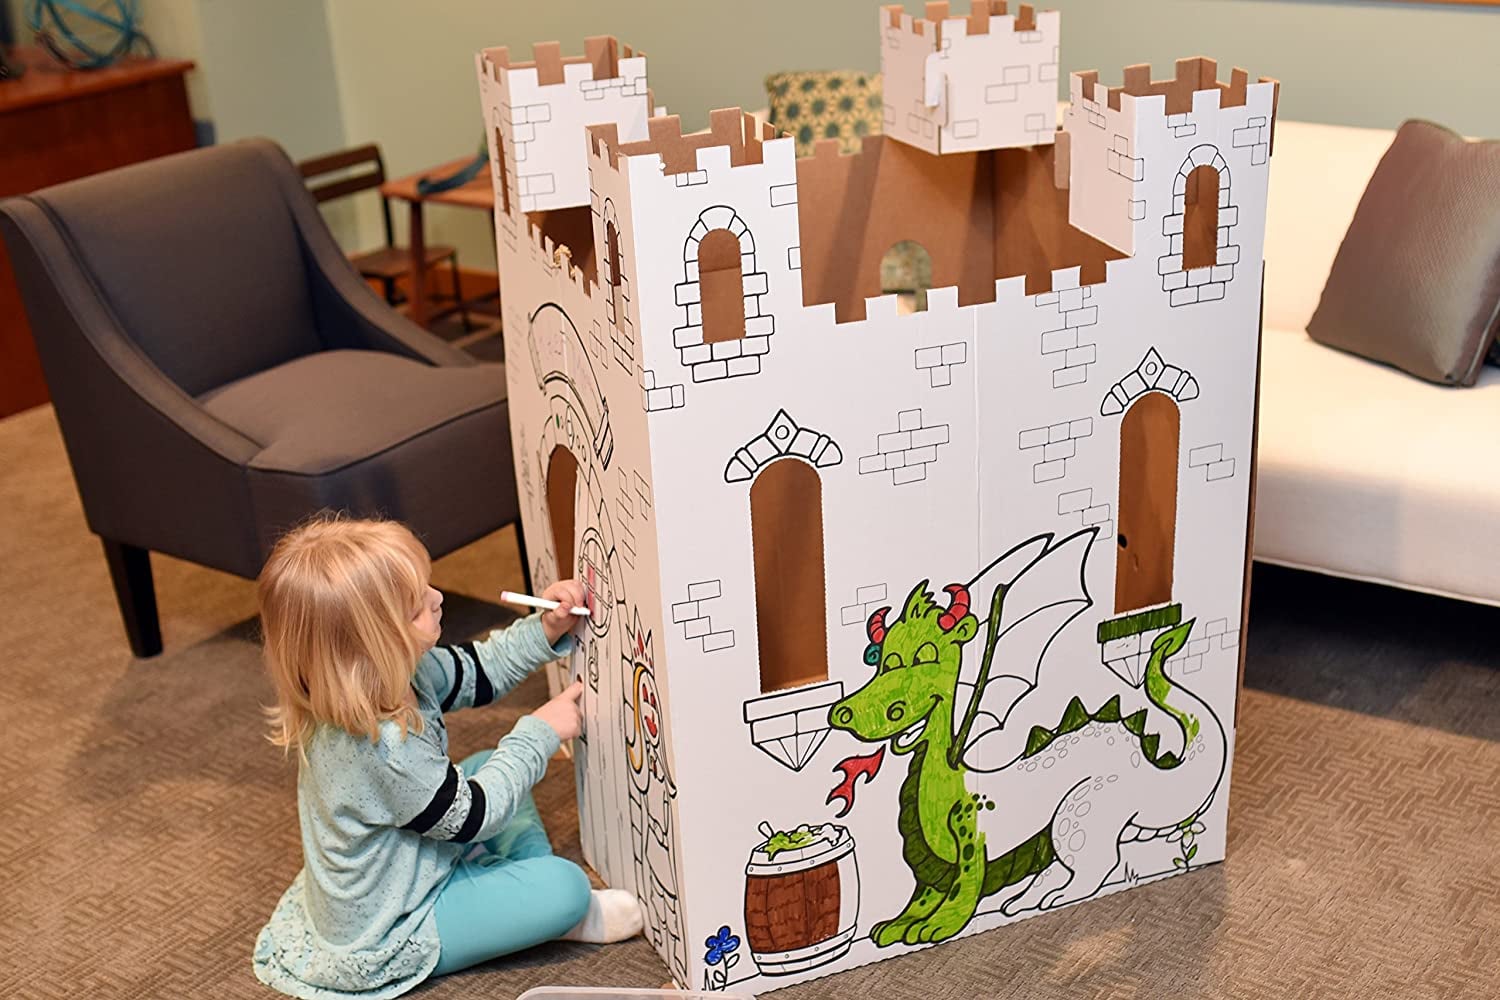 16 Piece Toy Cardboard Fort Building Set Kids Fun Toy Indoor Outdoor Activity 